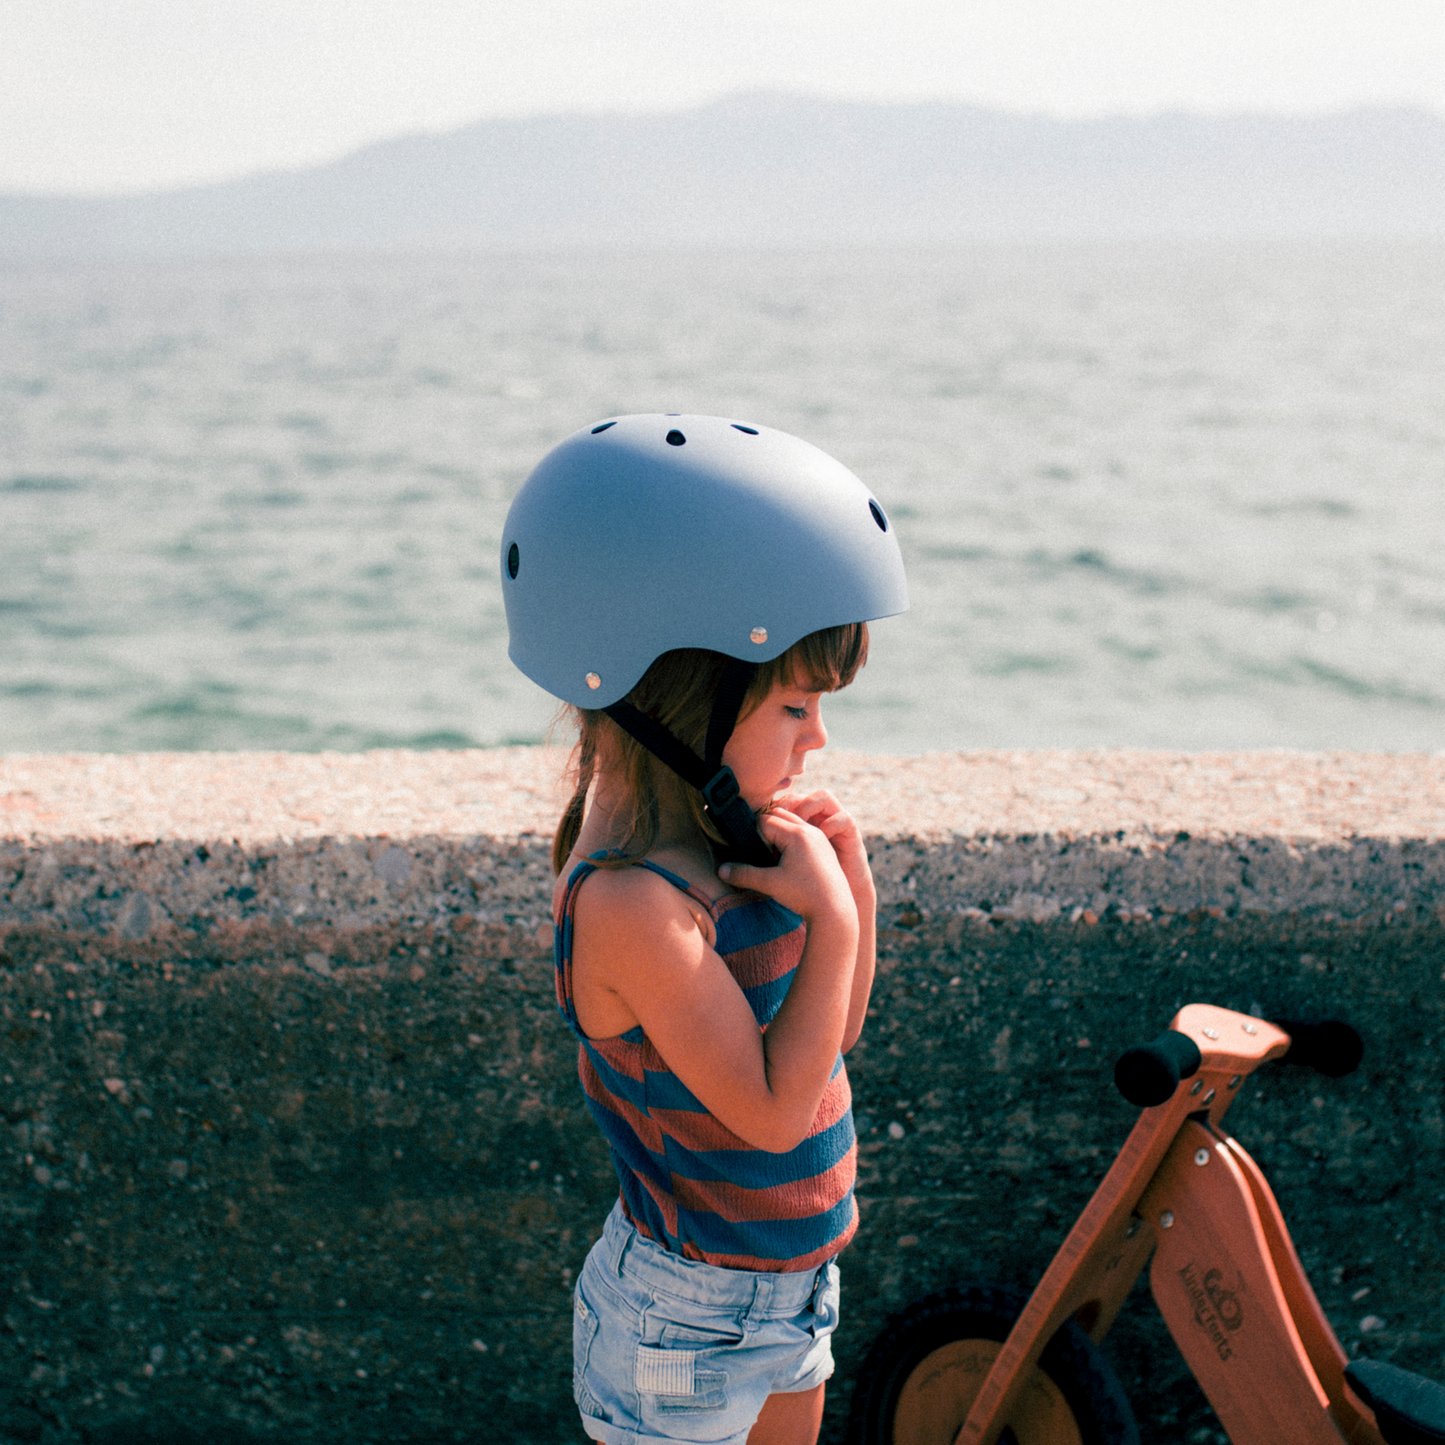 Kinderfeets kids bike helmet matte-Blue